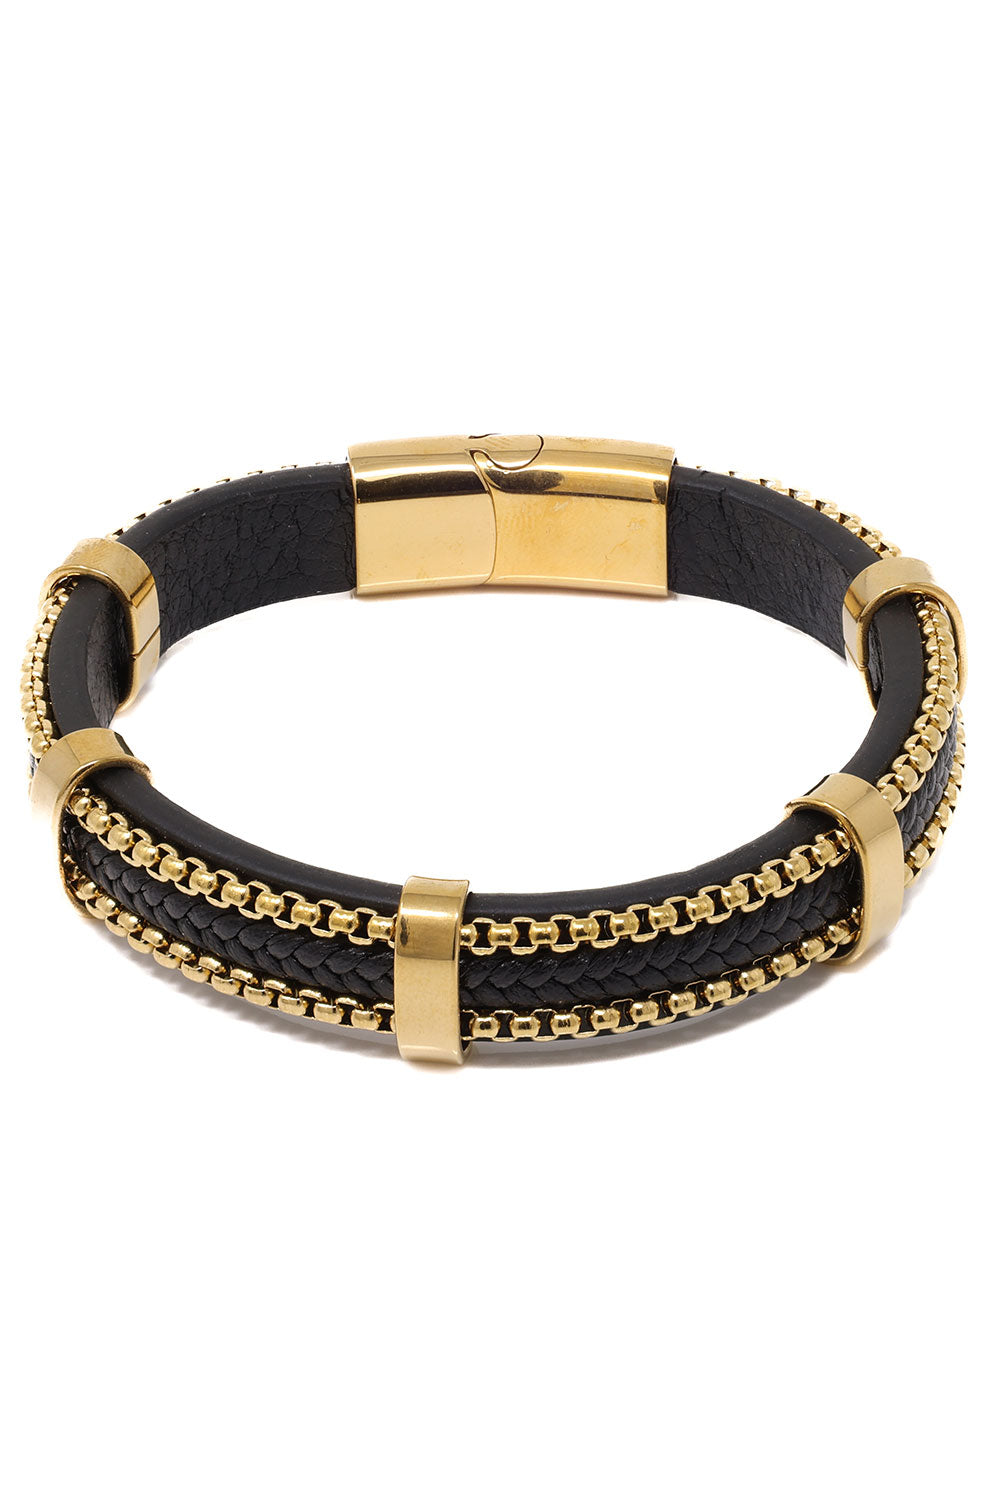 Barabas Unisex Braided Leather and Stones Bangle Bracelets 4BMS02 Black Gold